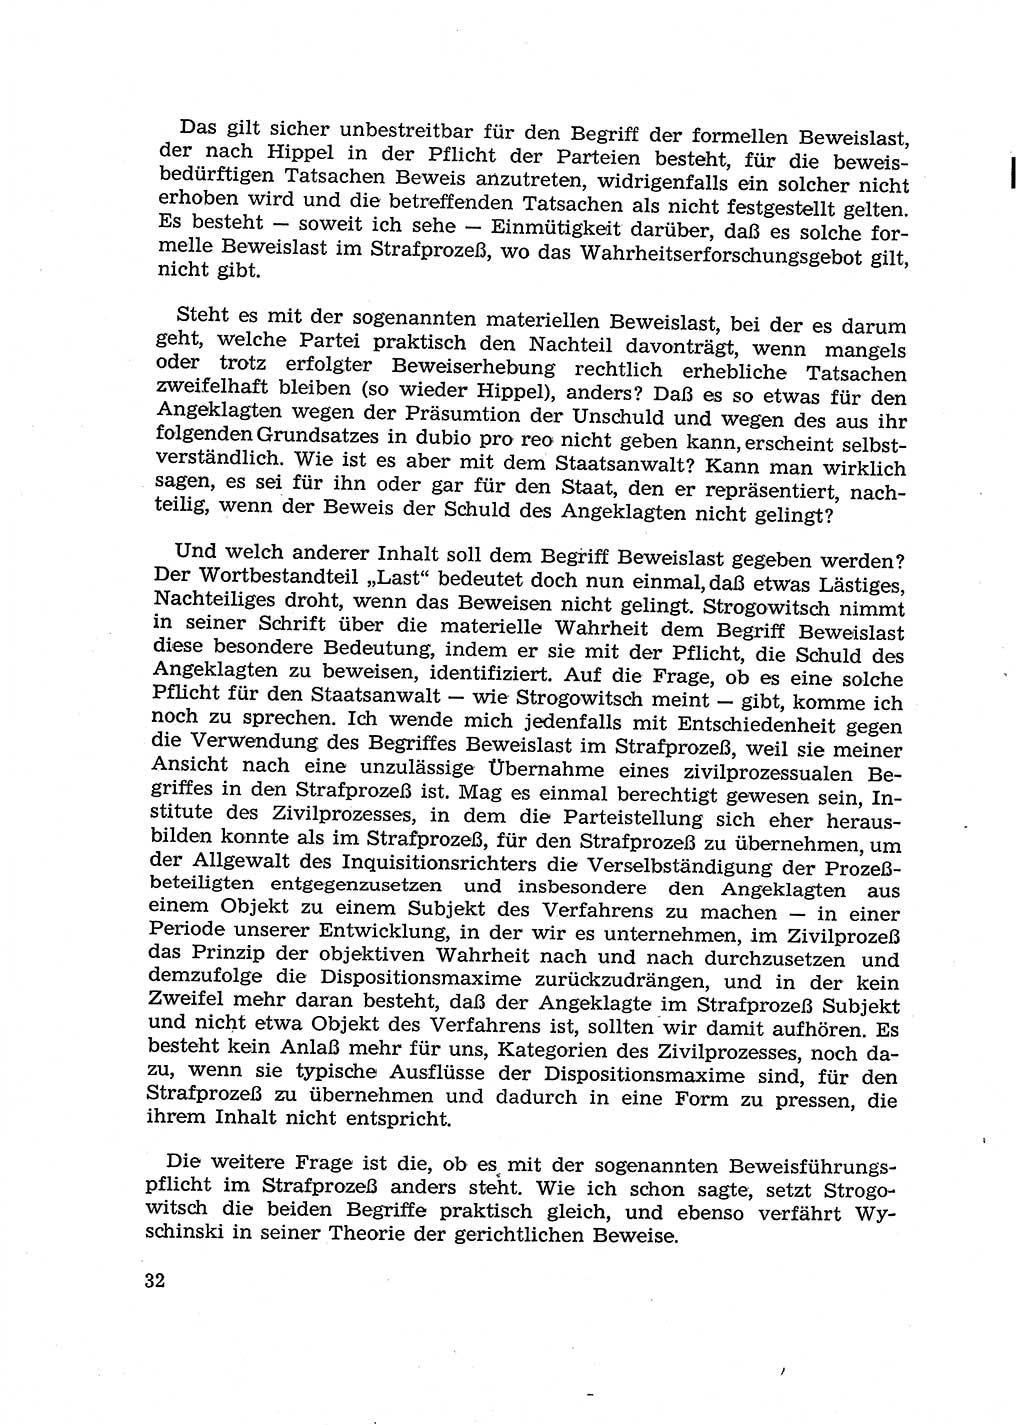 Fragen des Beweisrechts im Strafprozess [Deutsche Demokratische Republik (DDR)] 1956, Seite 32 (Fr. BeweisR. Str.-Proz. DDR 1956, S. 32)